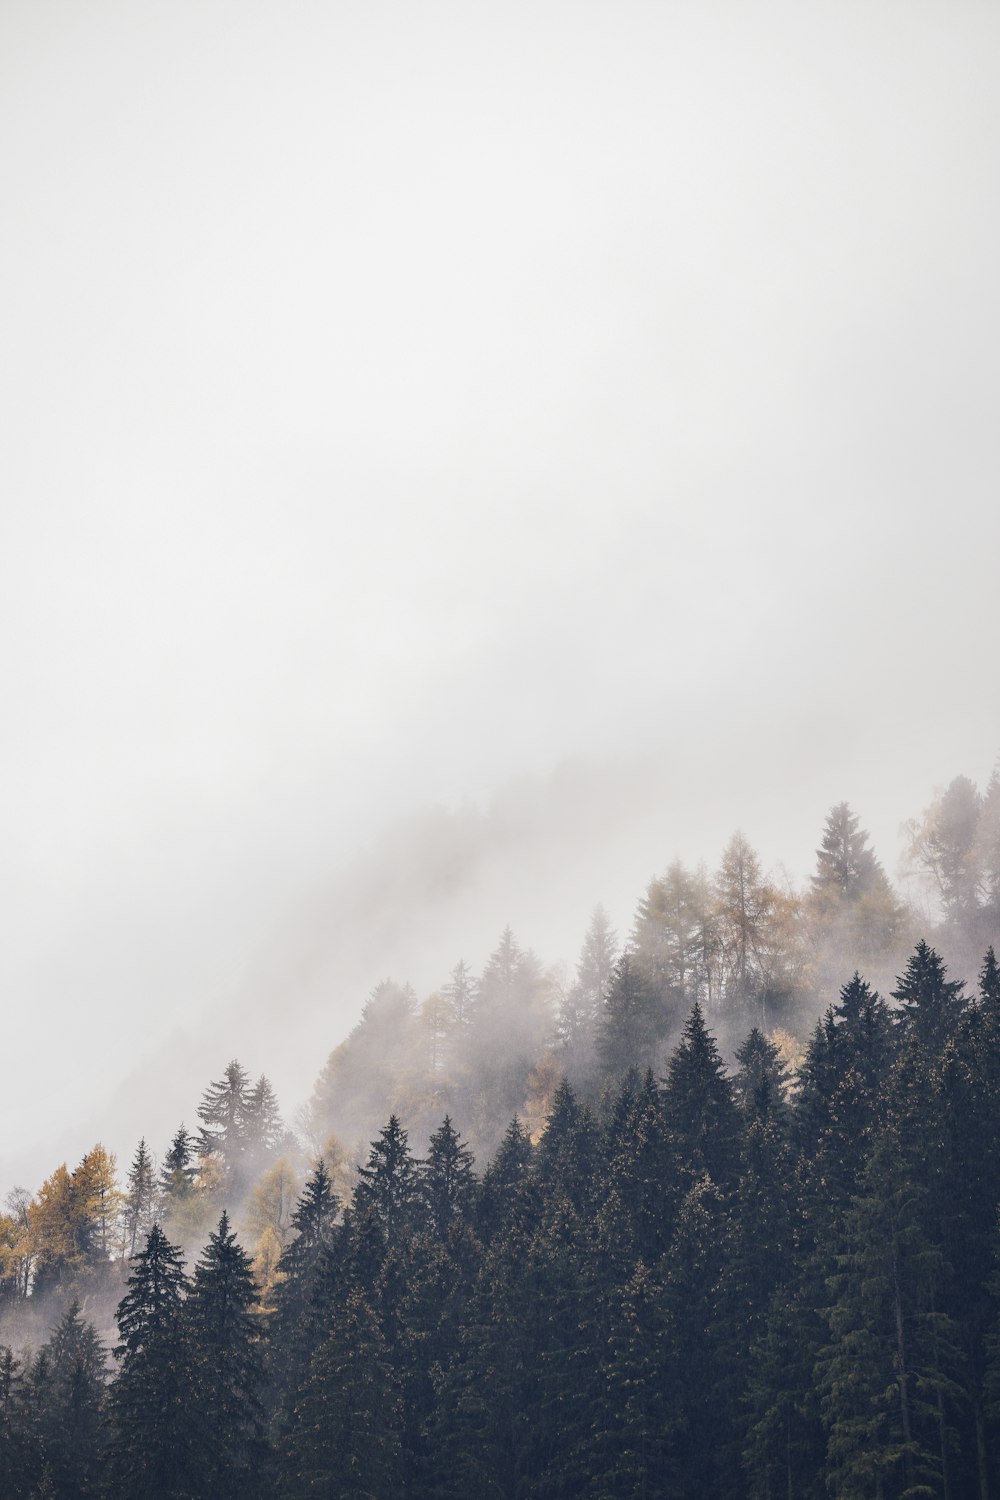 montagne avec de grands arbres couverts de brouillards